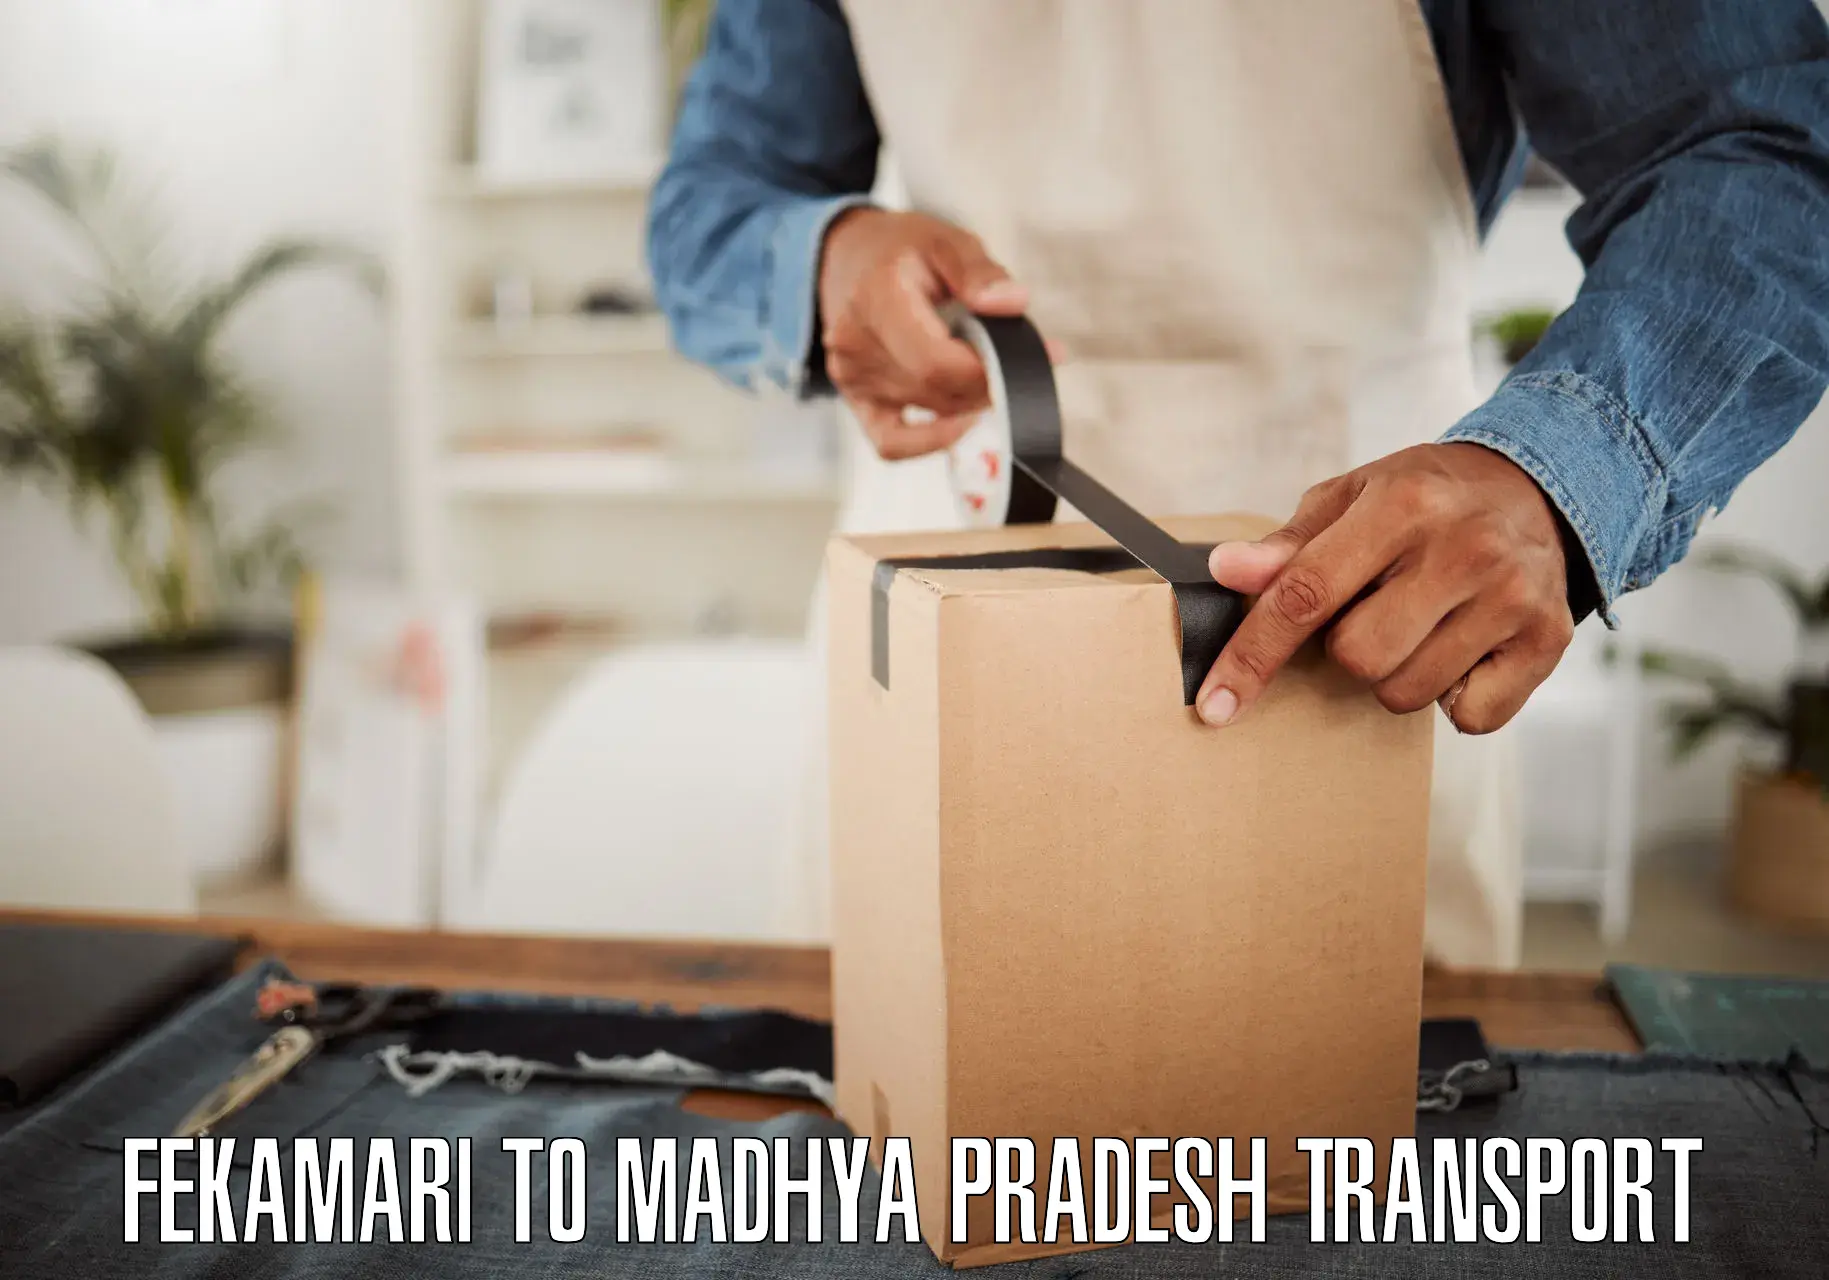 Interstate transport services Fekamari to Madhya Pradesh